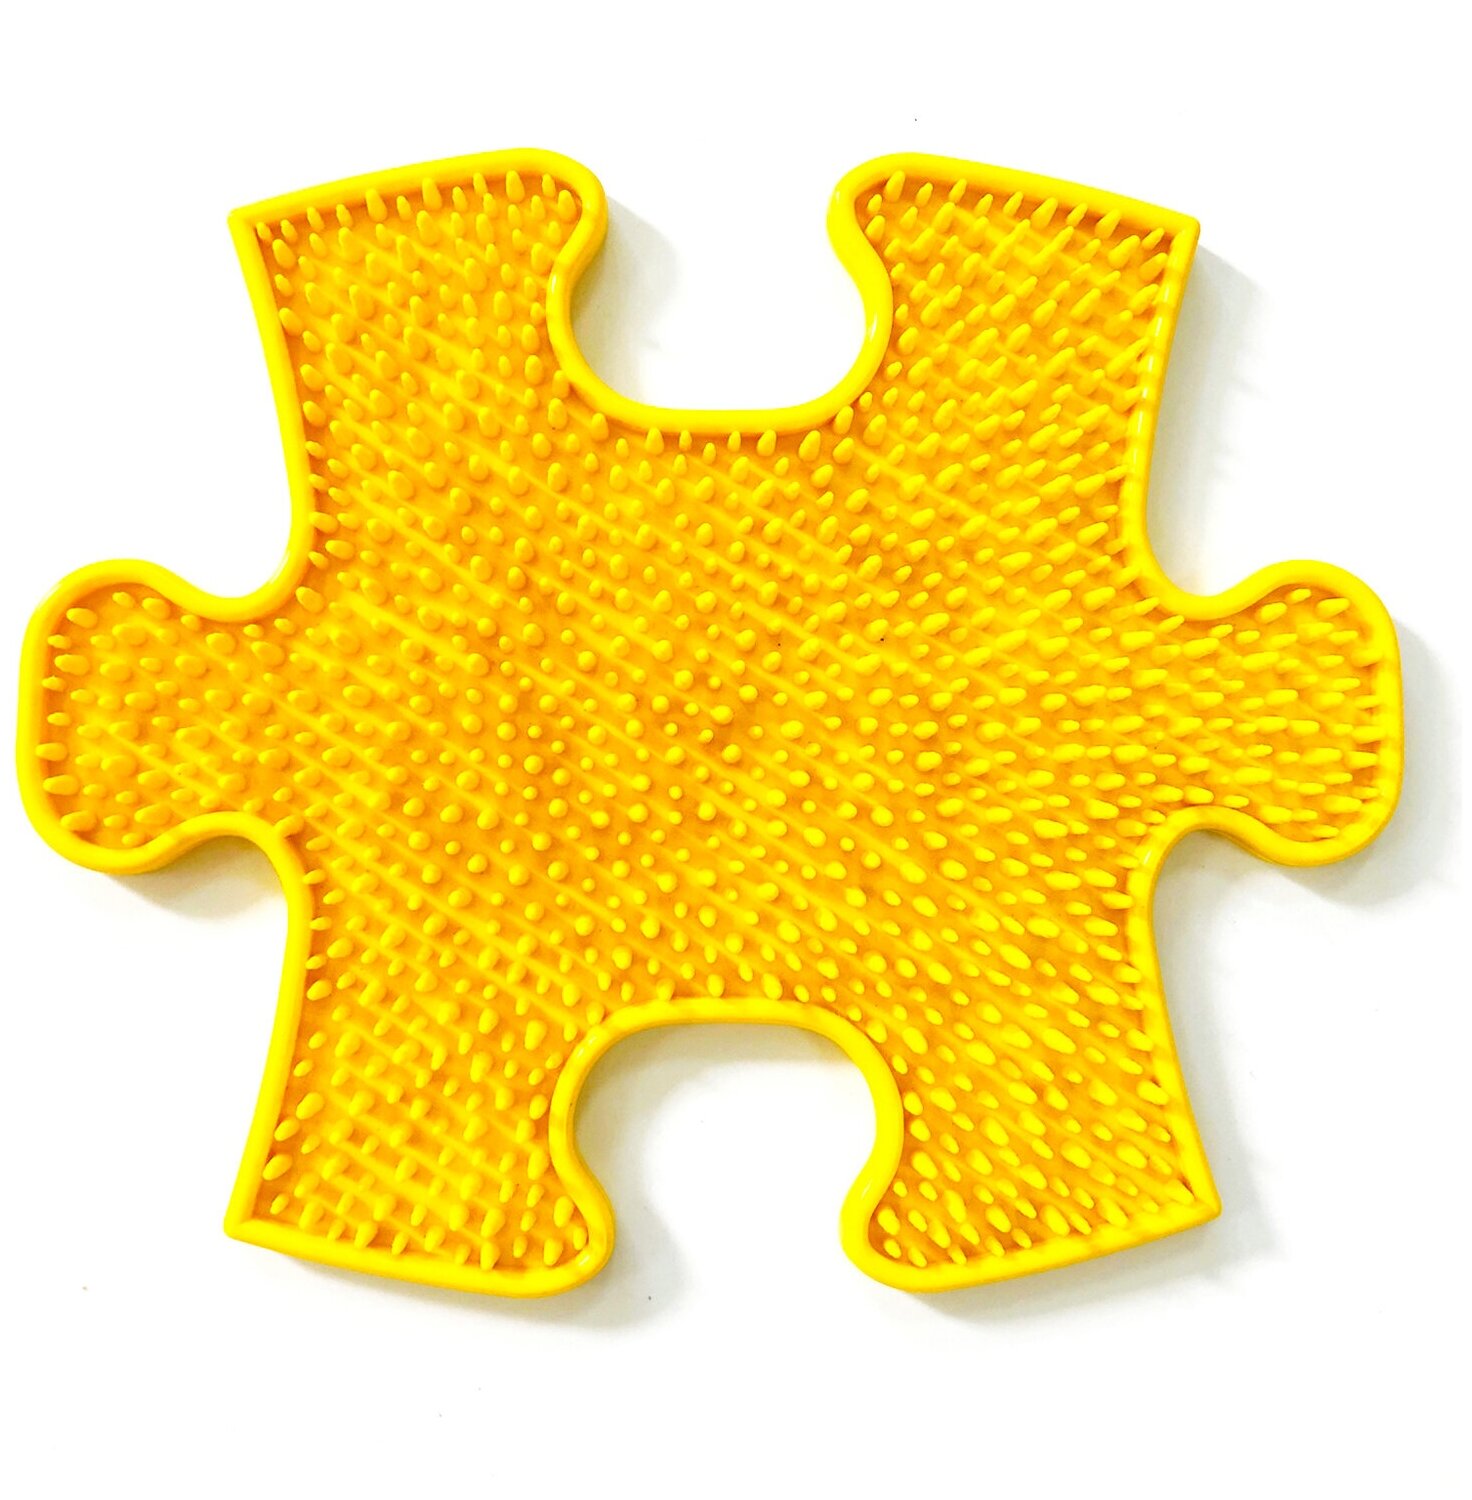 Модульный коврик ИграПол Травка маленький (желтый)